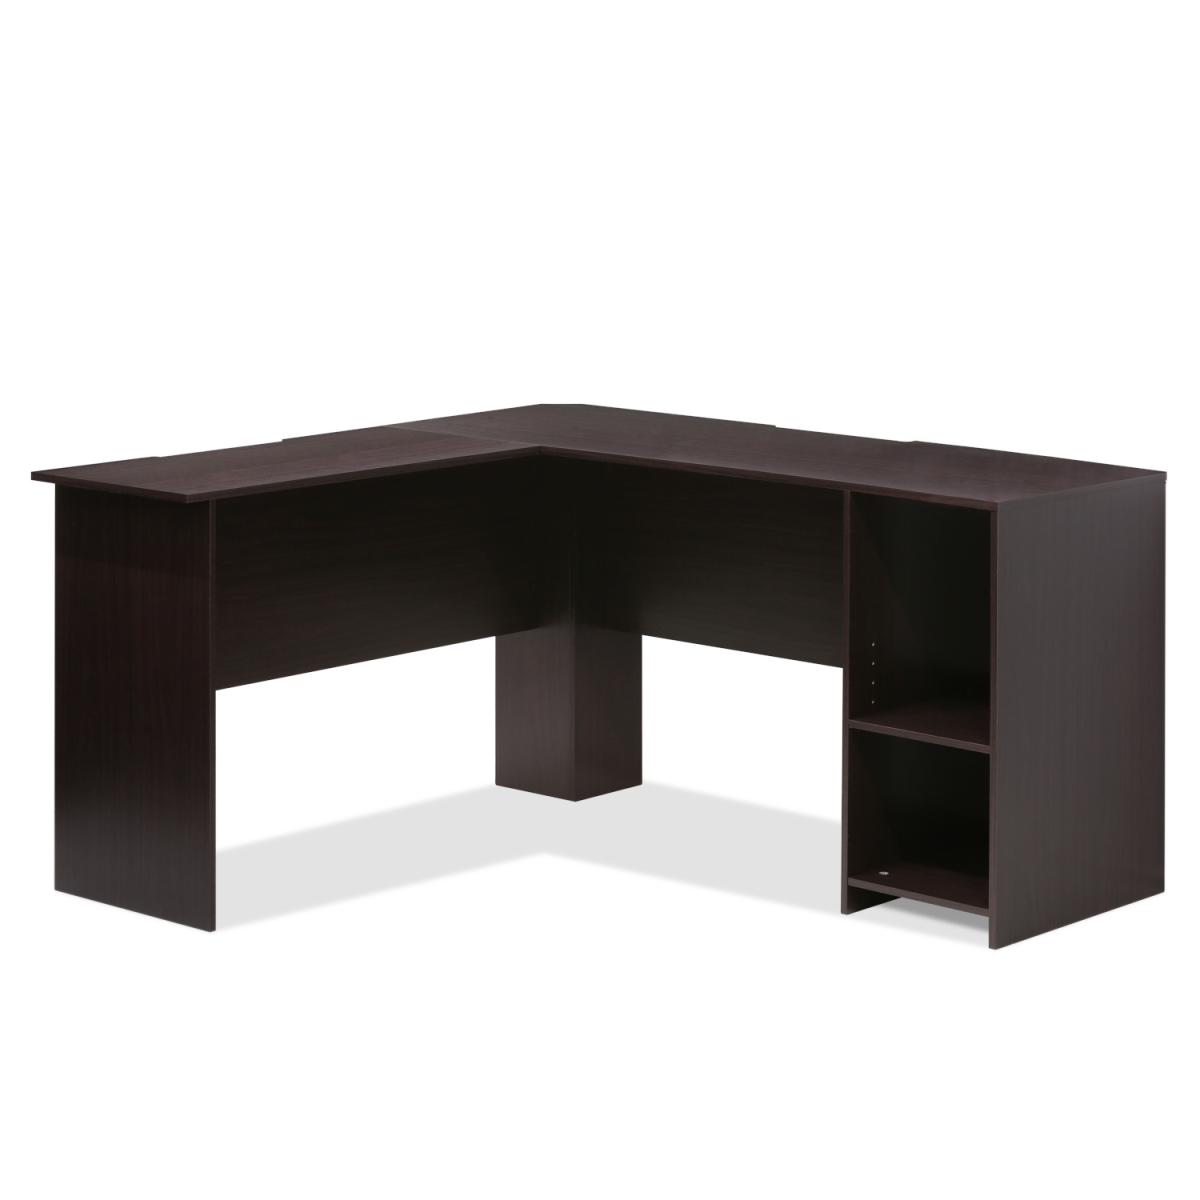 16084ex Indo L-shaped Desk With Bookshelves, Espresso